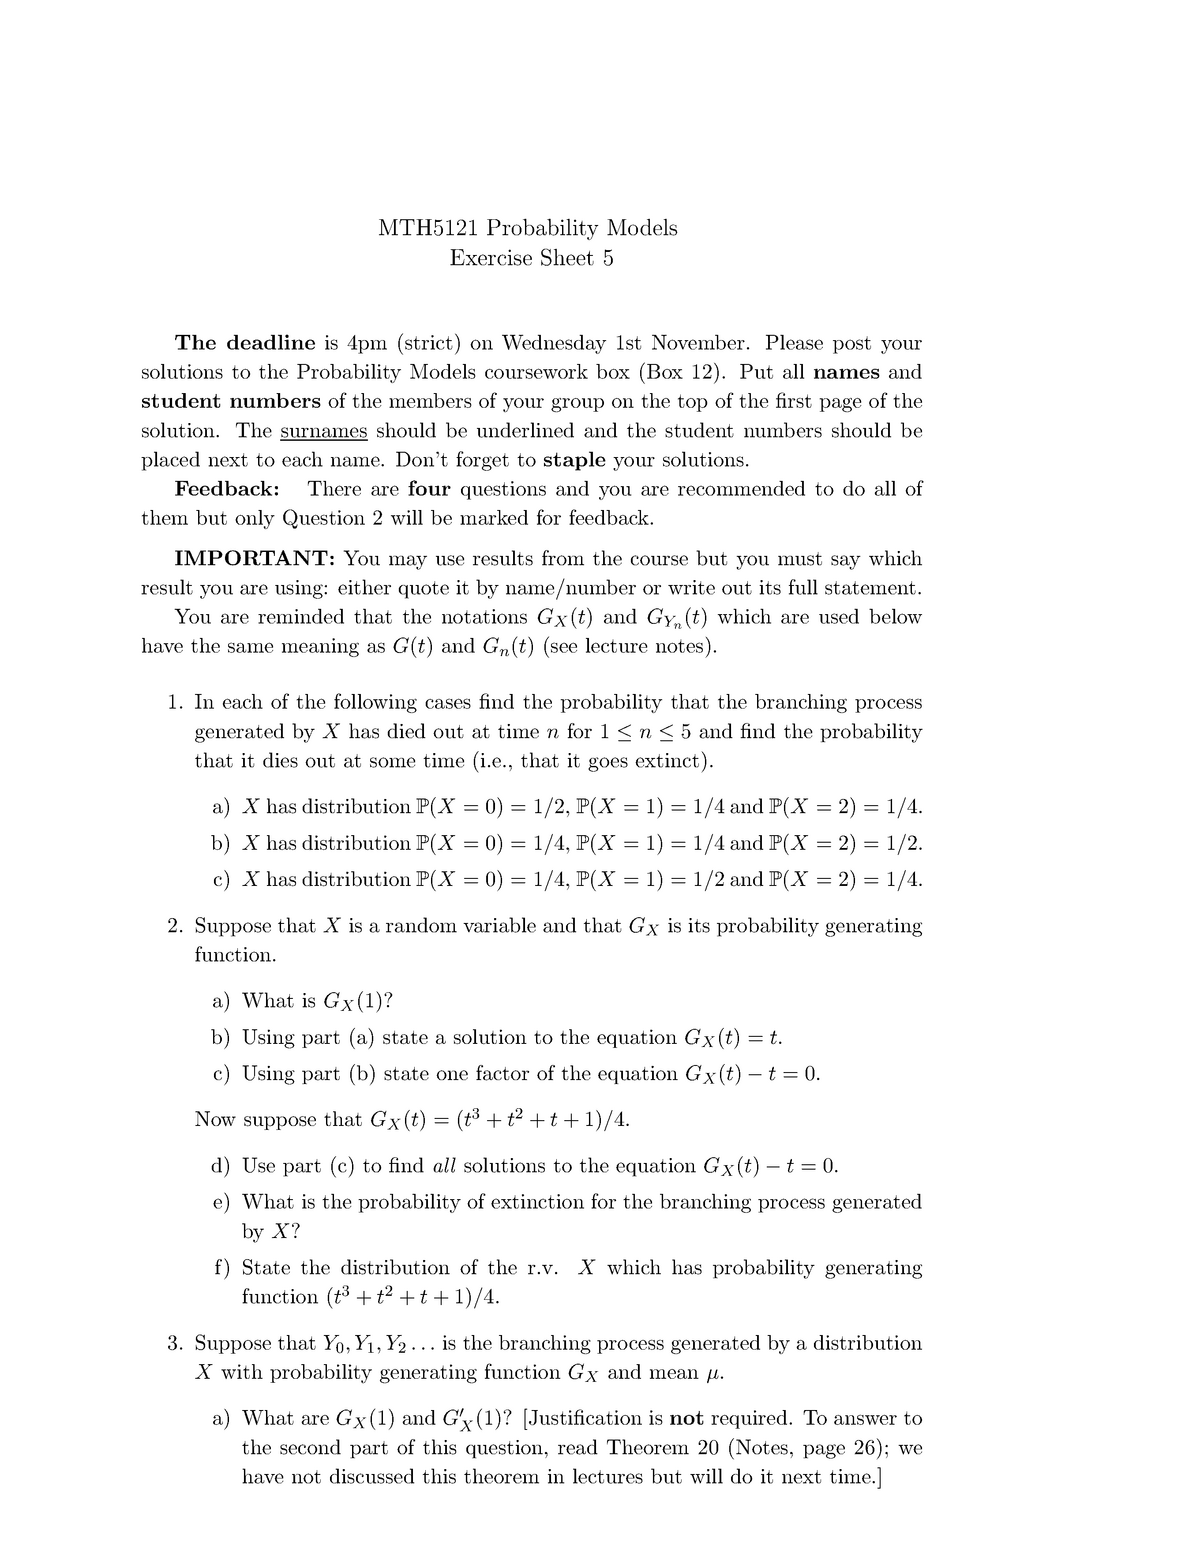 Mth5121 17 18 Exercise Sheet 5 Probability Models Studocu